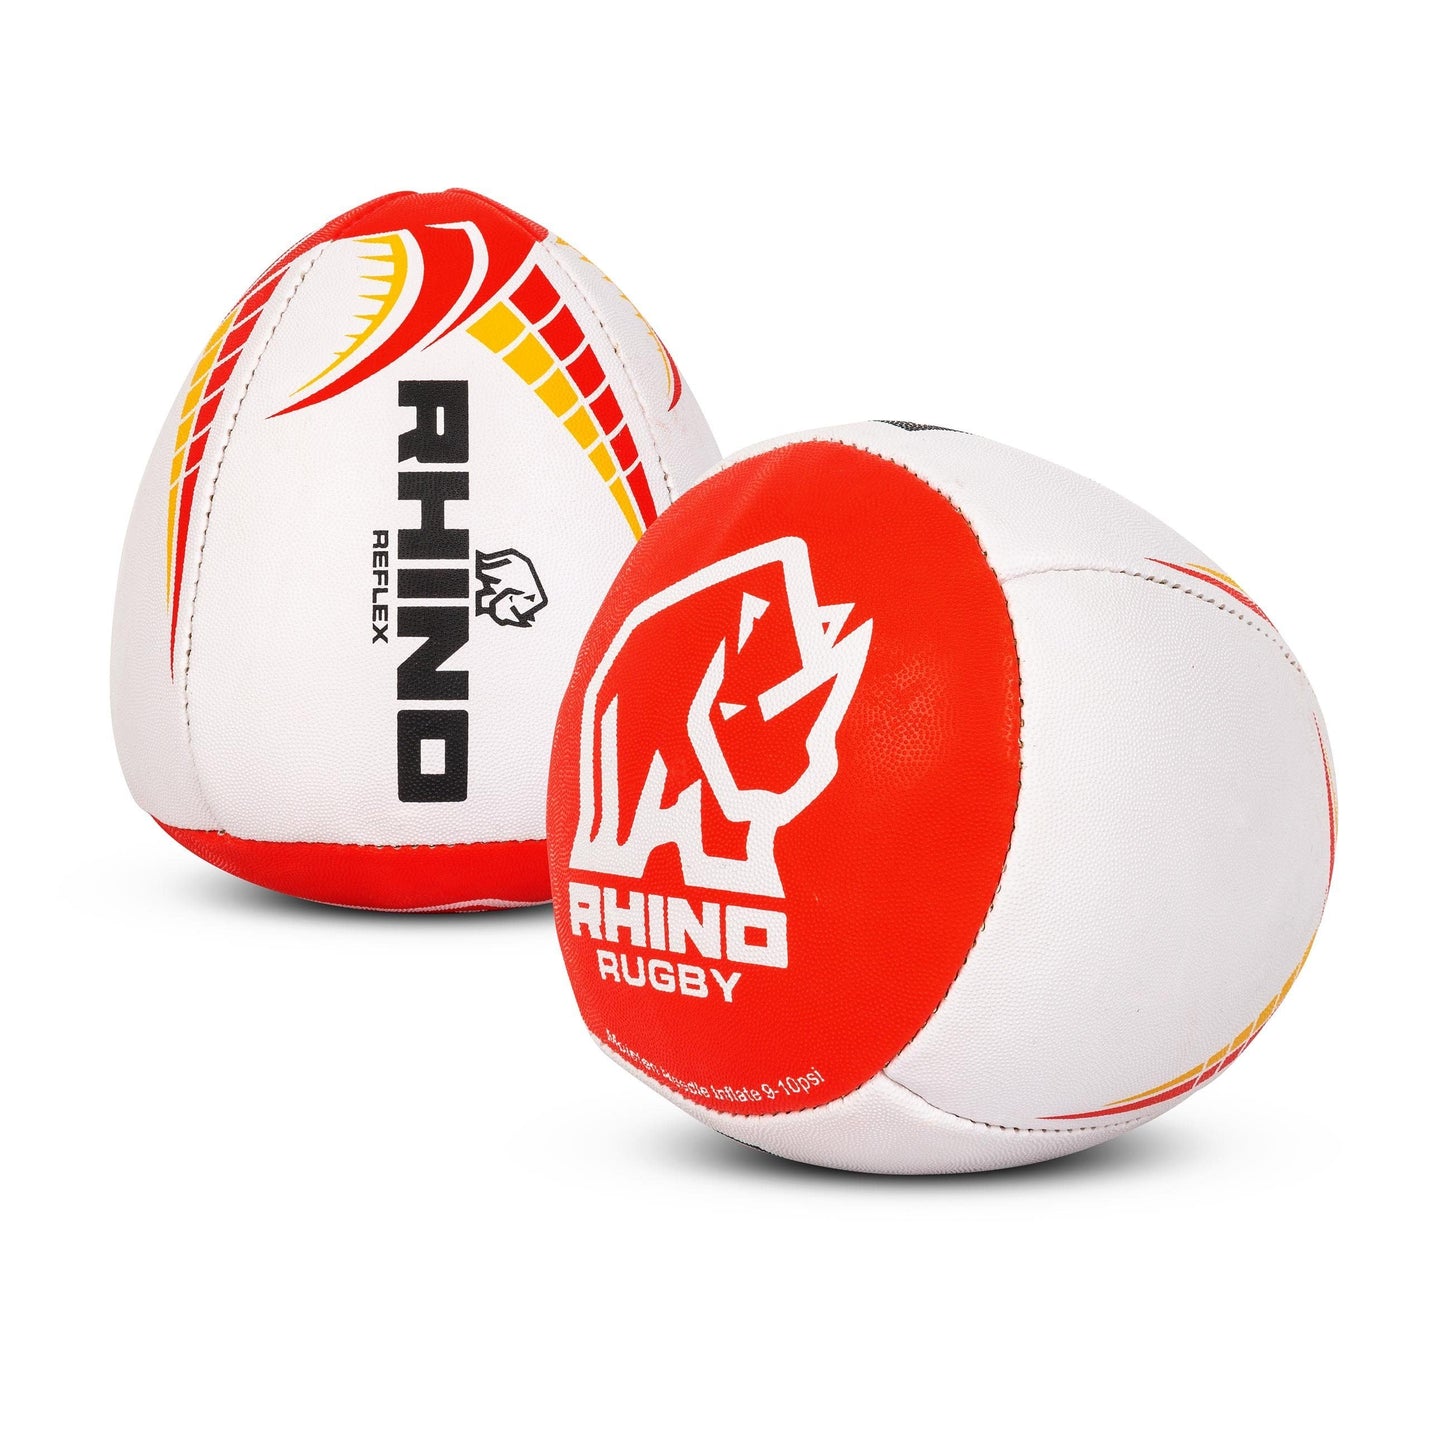 Rhino Rugby Reflex Wall Ball